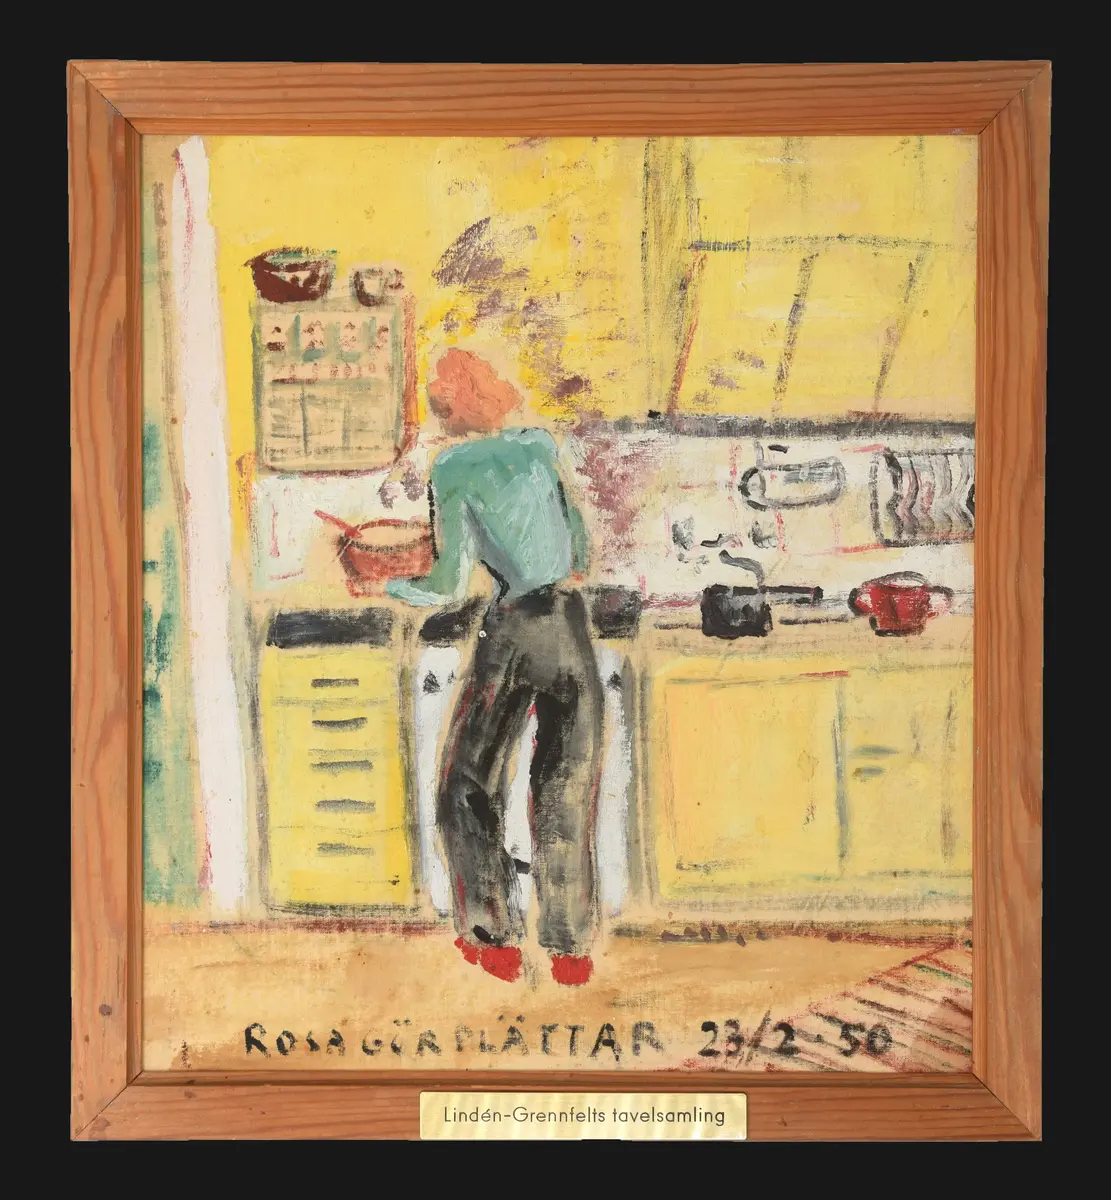 Historisk bild. Titel; Rosa gör plättar 23/2-50, (nummer 64), interiör. Signatur saknas. Ram; 2 cm, trävit. 
Motivet visar en köksmiljö med gul köksinteriör i 1950-tals stil. Framför spisen är en kvinna sedd bakifrån (vänd mot spisen) med orange hår till ovanför axlarna. Klädd i  turkos blus, svarta byxor och röda skor.